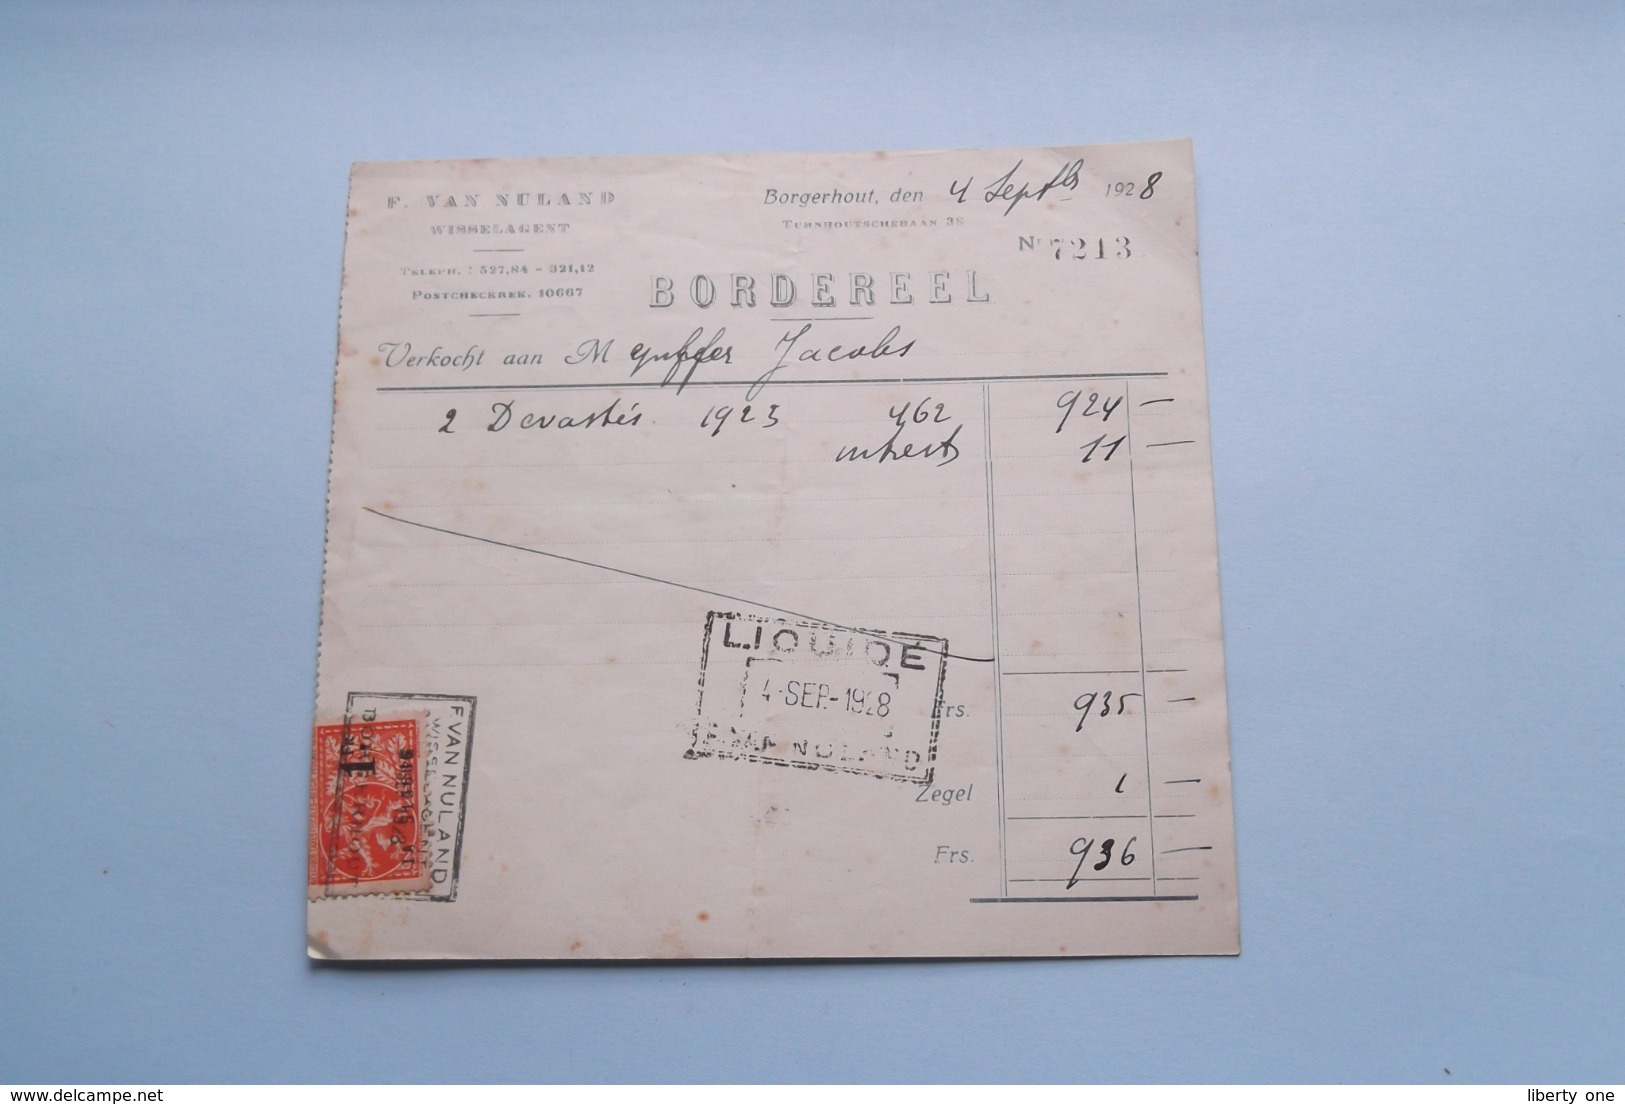 F. Van NULAND WISSELAGENT BORGERHOUT Antwerpen > BORDEREEL Anno 1928 ( Zie Foto's ) 1 Stuk ! - Bank En Verzekering